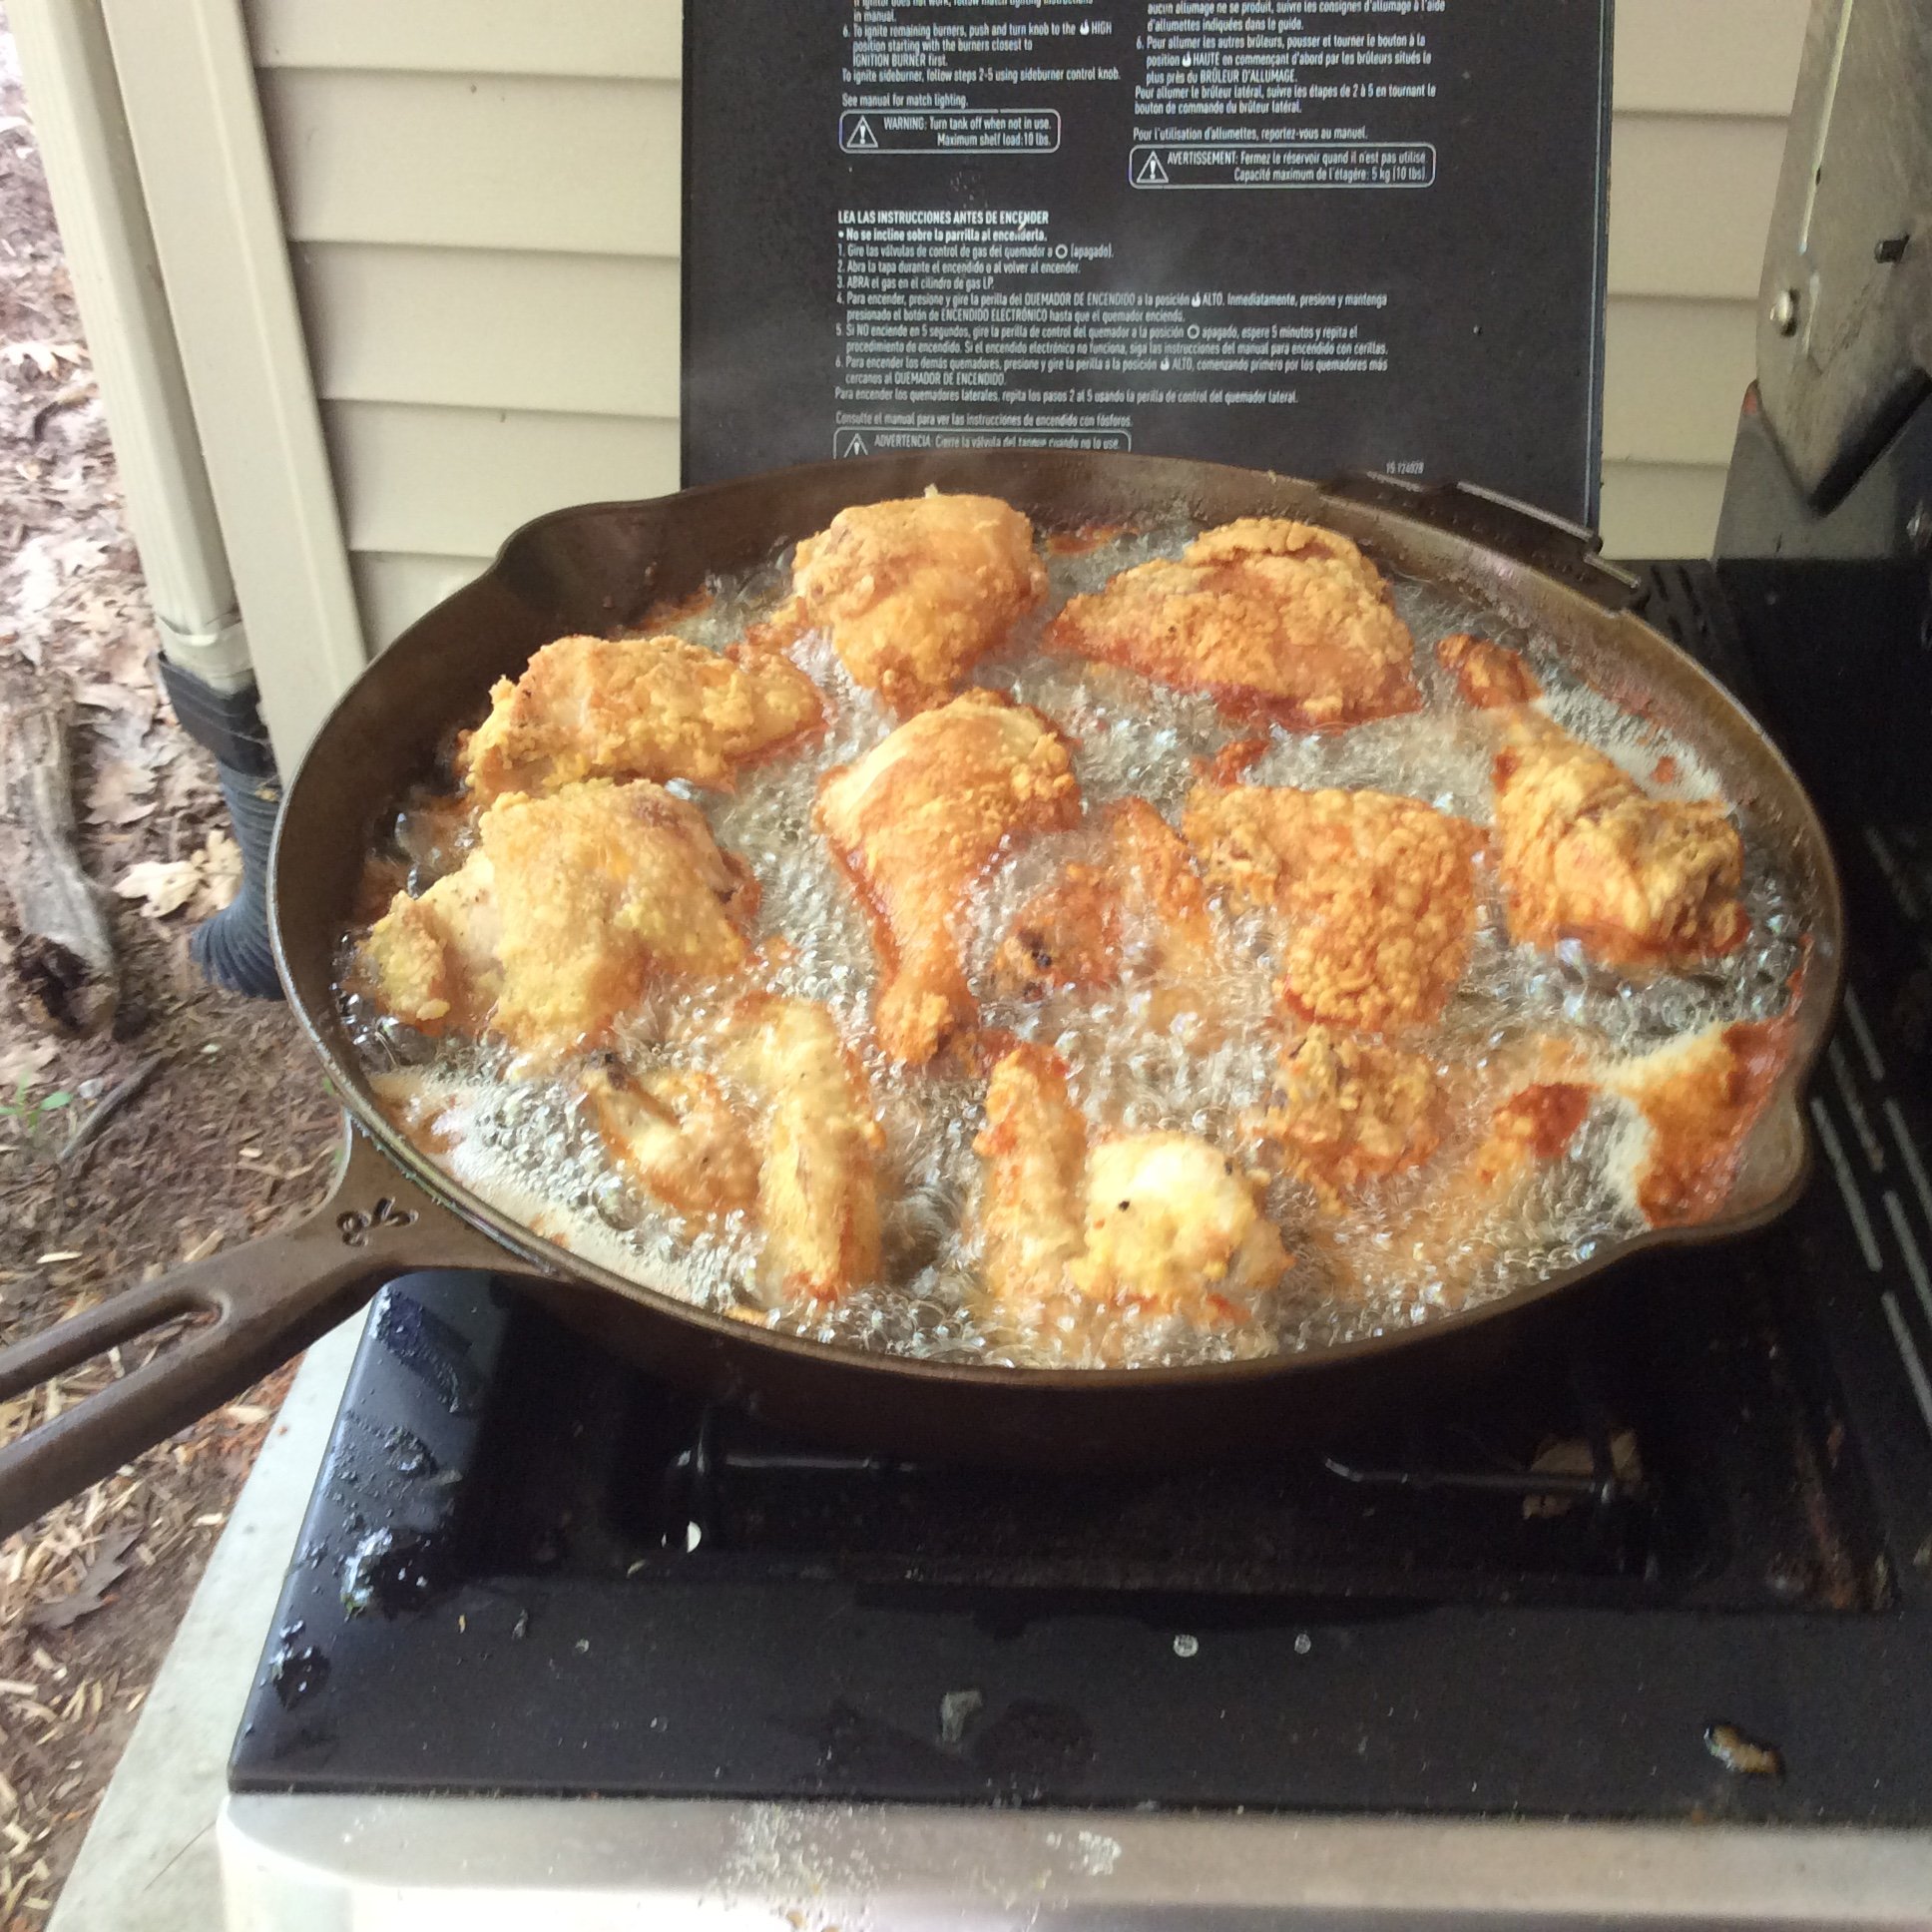 Next Happening: Chicken fried in pork lard